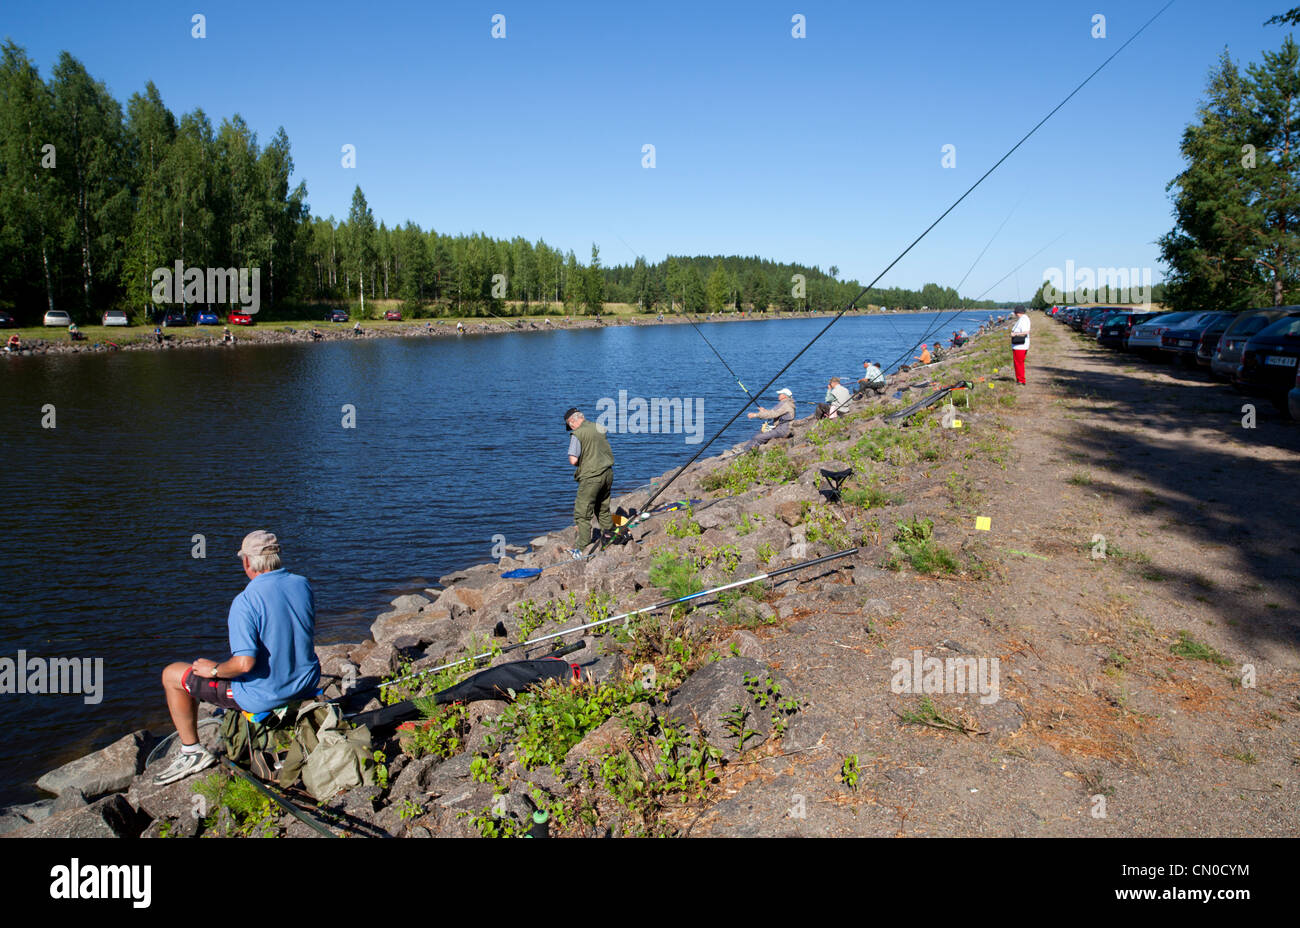 Championnat national finlandais de la pêche à la ligne 2011 à Kansola Canal de Saimaa. Série d'anciens combattants (60 +). , Finlande Banque D'Images